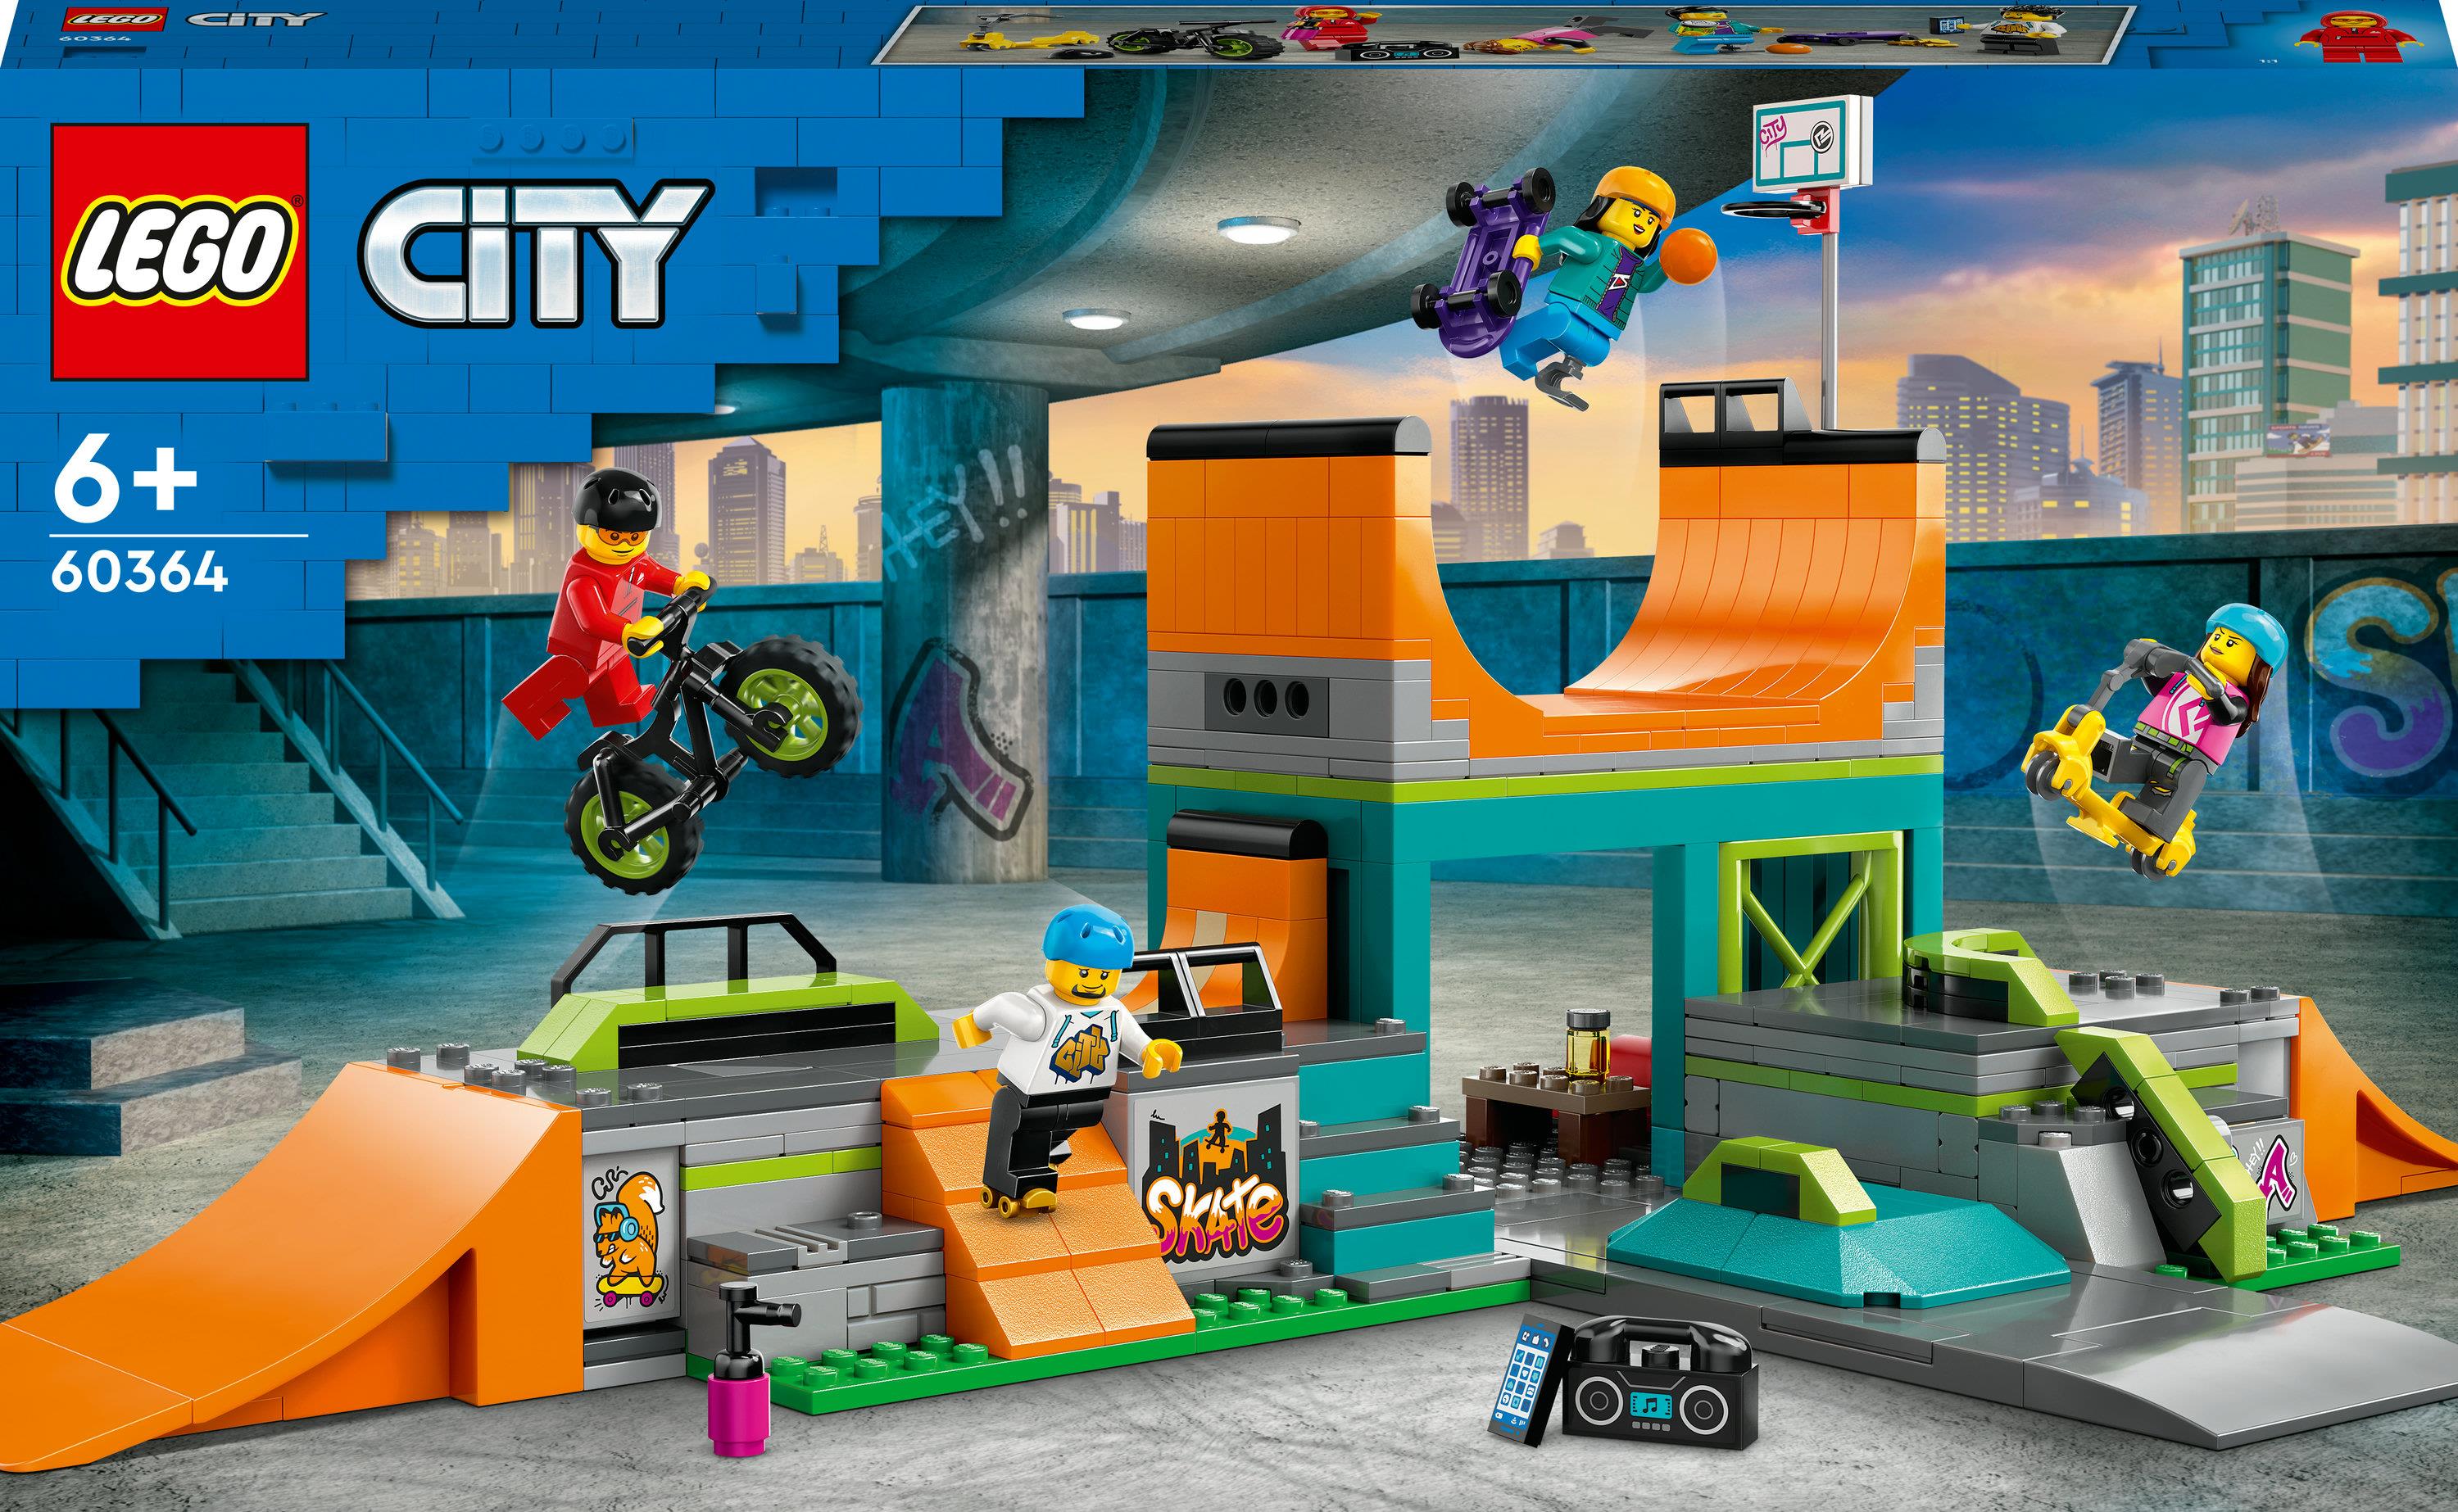 LEGO City 60364 Skate